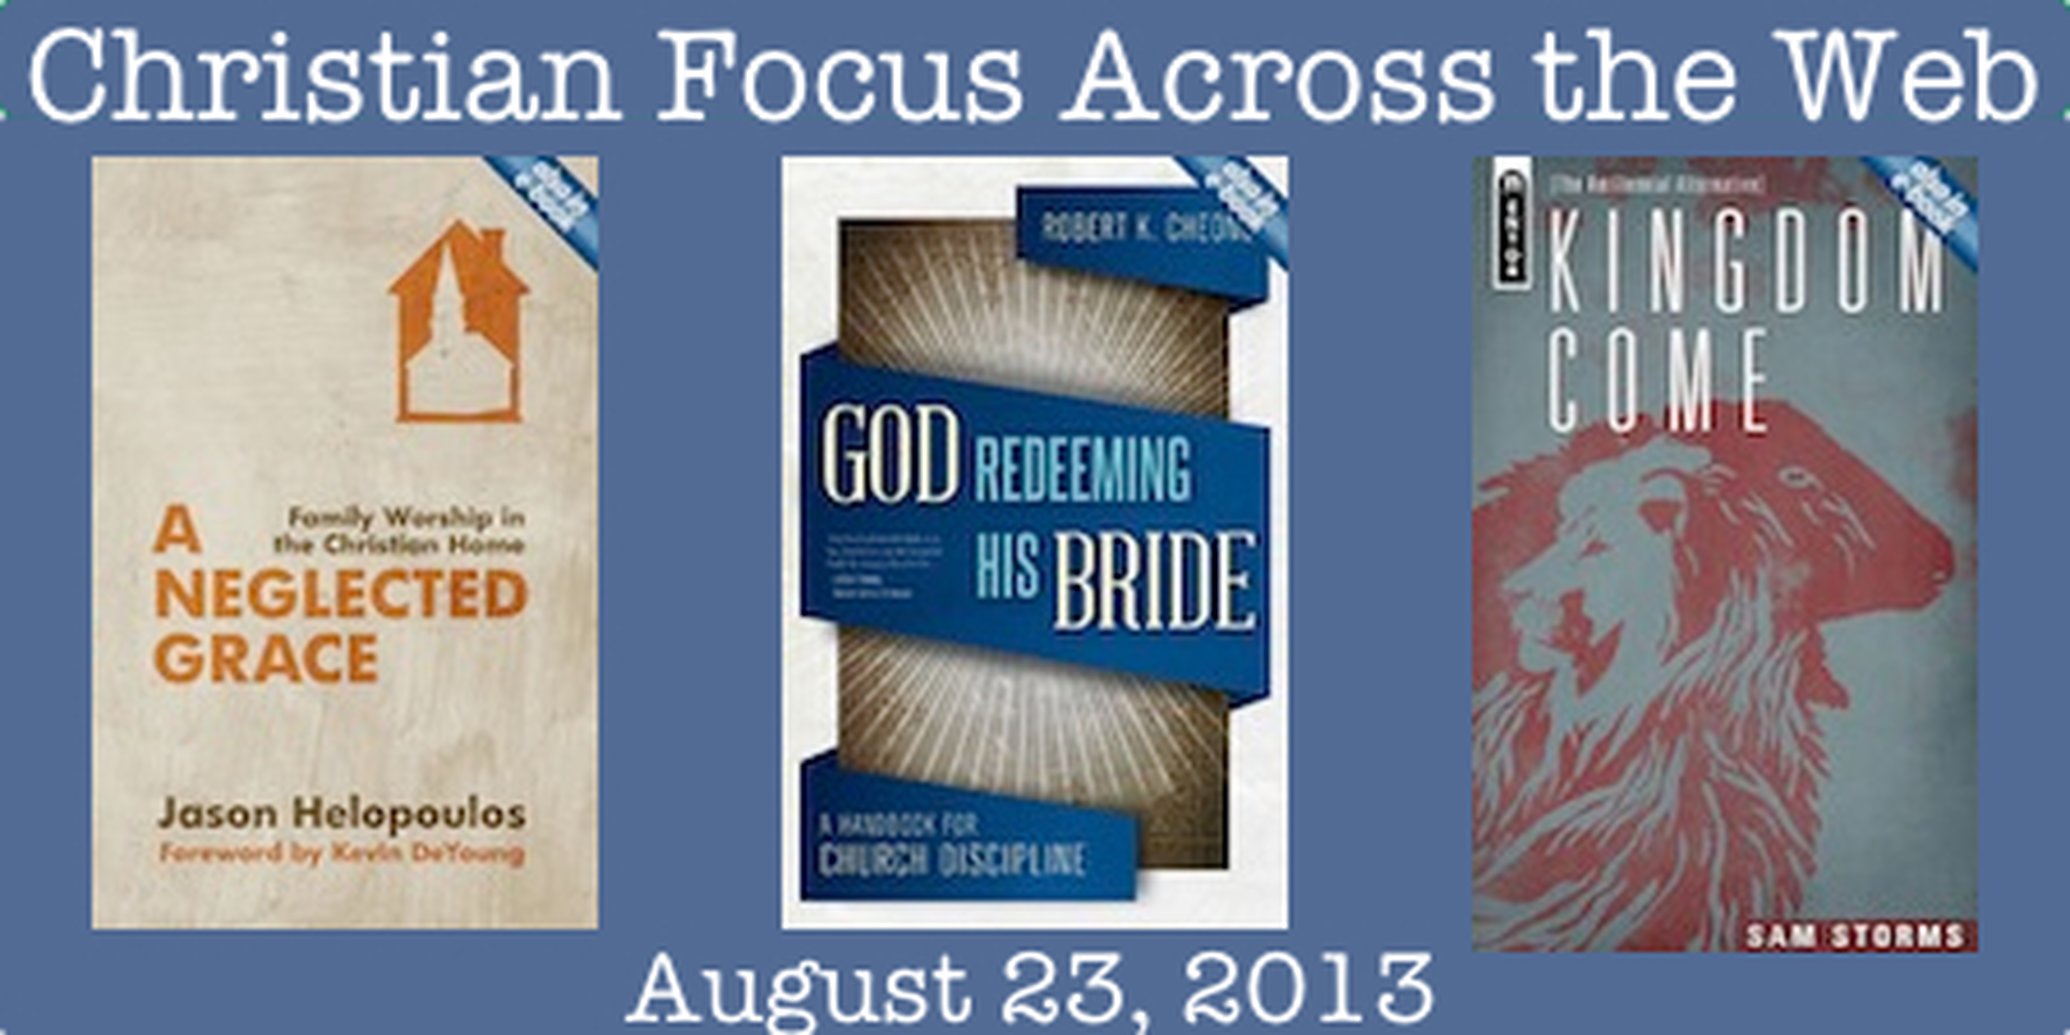 Christian Focus Across the Web - August 23, 2013